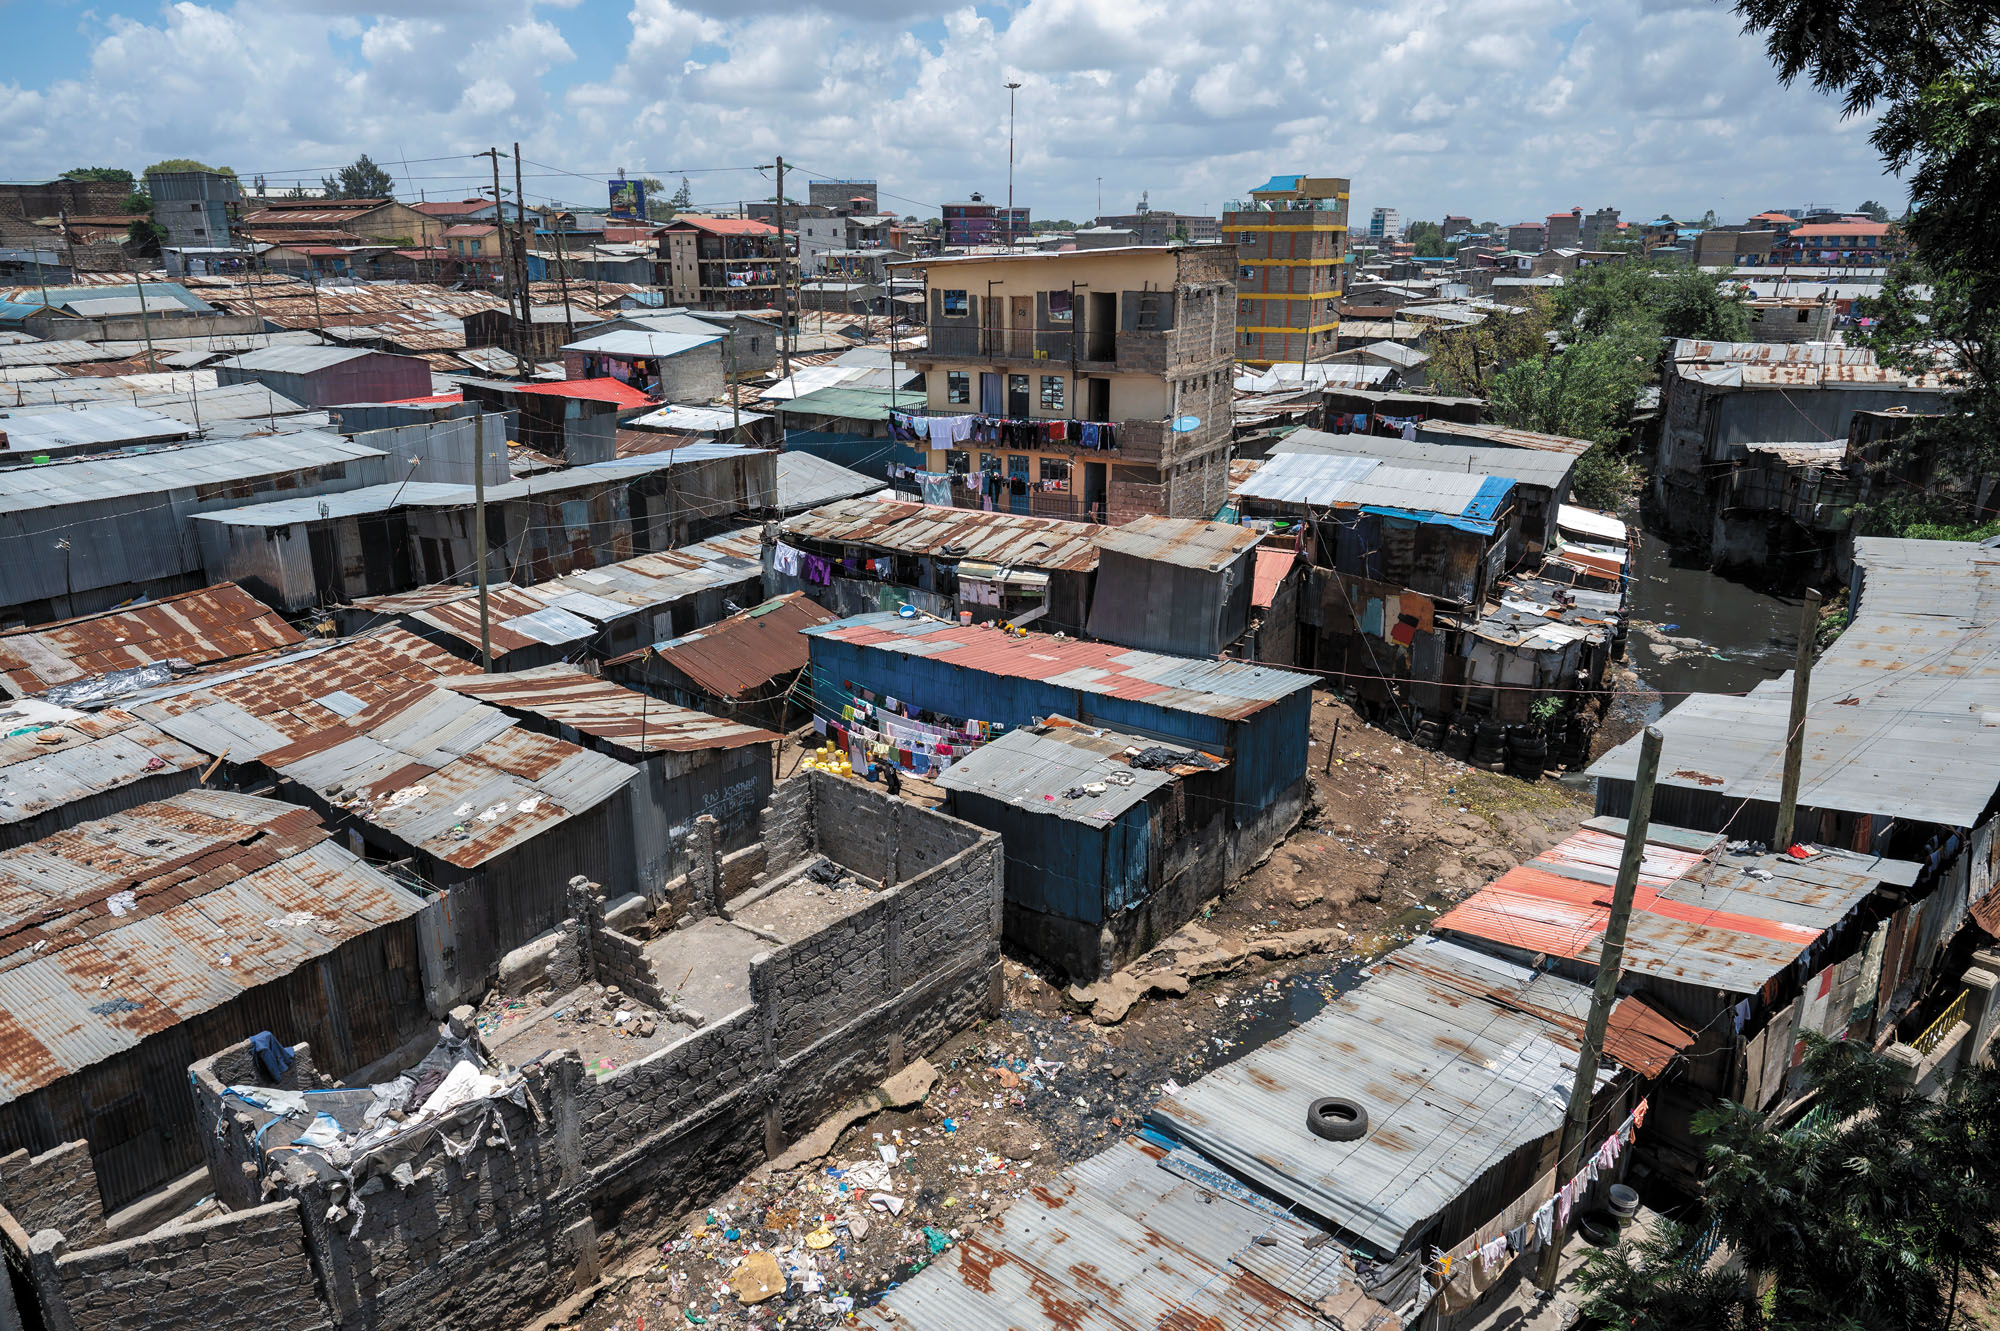 Das Mukuru Slum liegt im Umfeld der kenianischen Hauptstadt Nairobi. Hier leben rund eine Million Menschen in sehr ärmlichen Verhältnissen.